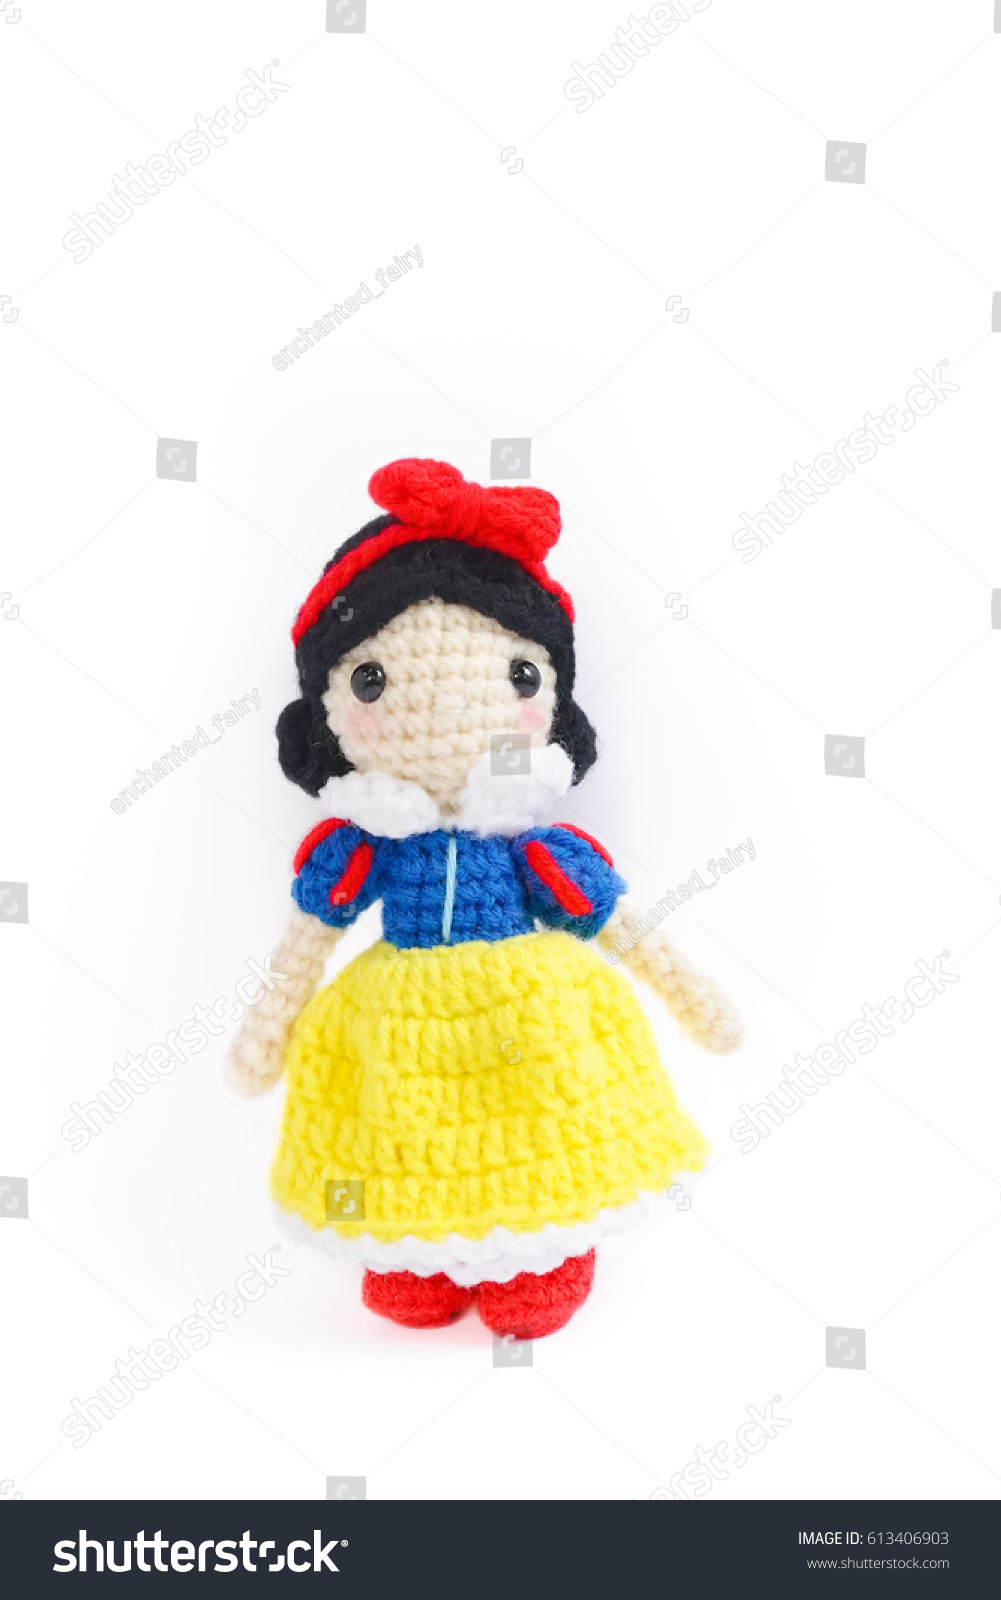 crochet snow white dress